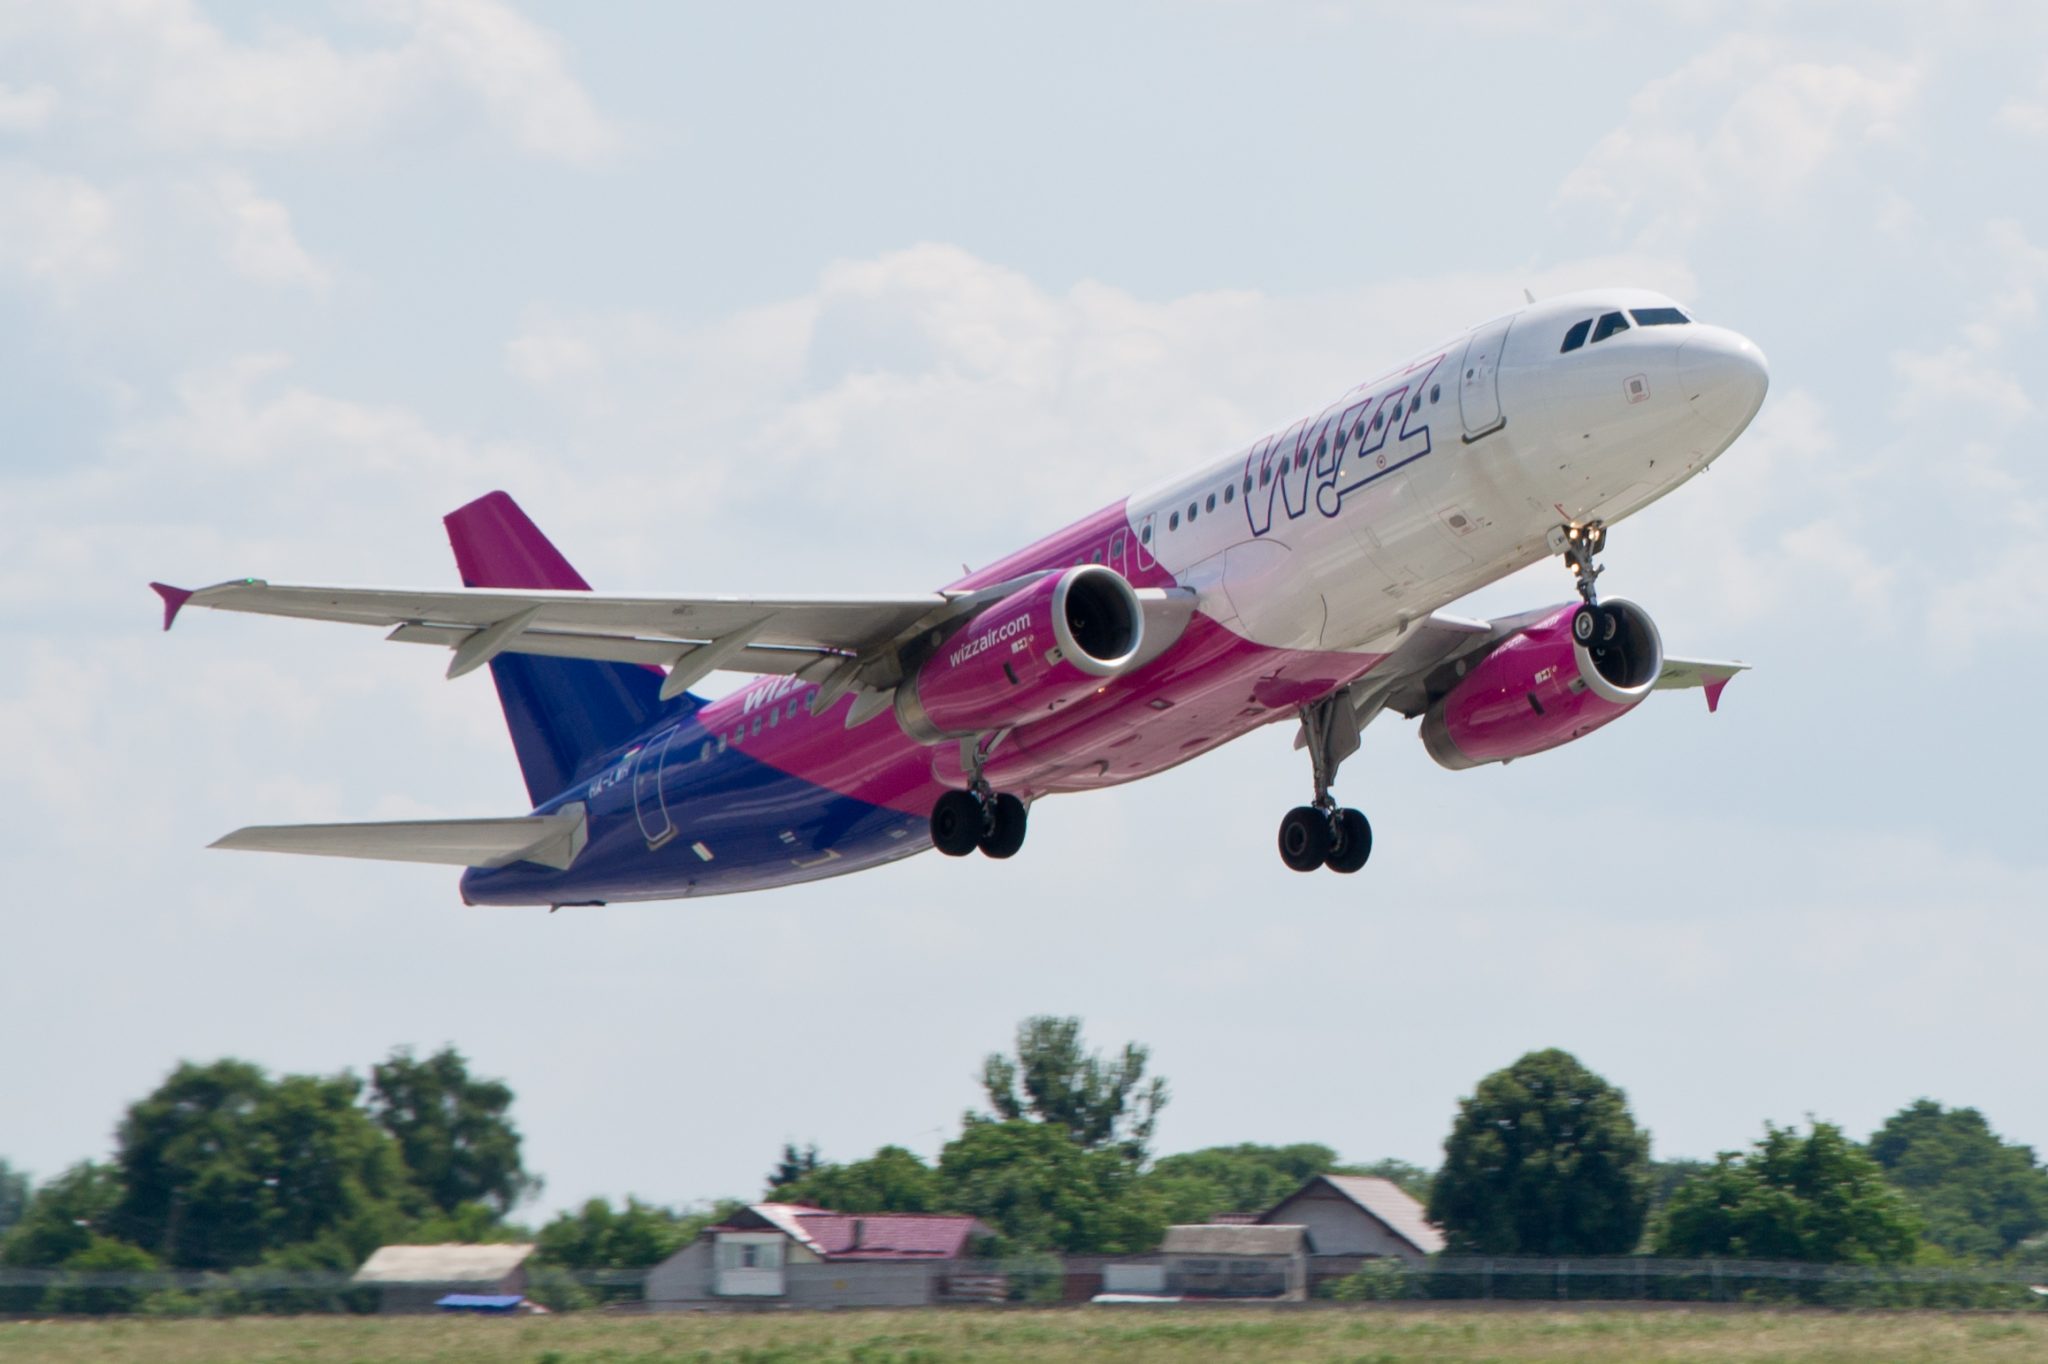 Ekskluzivno: Wizz Air planira poslovanje u Sjedinjenim Američkim Državama!?